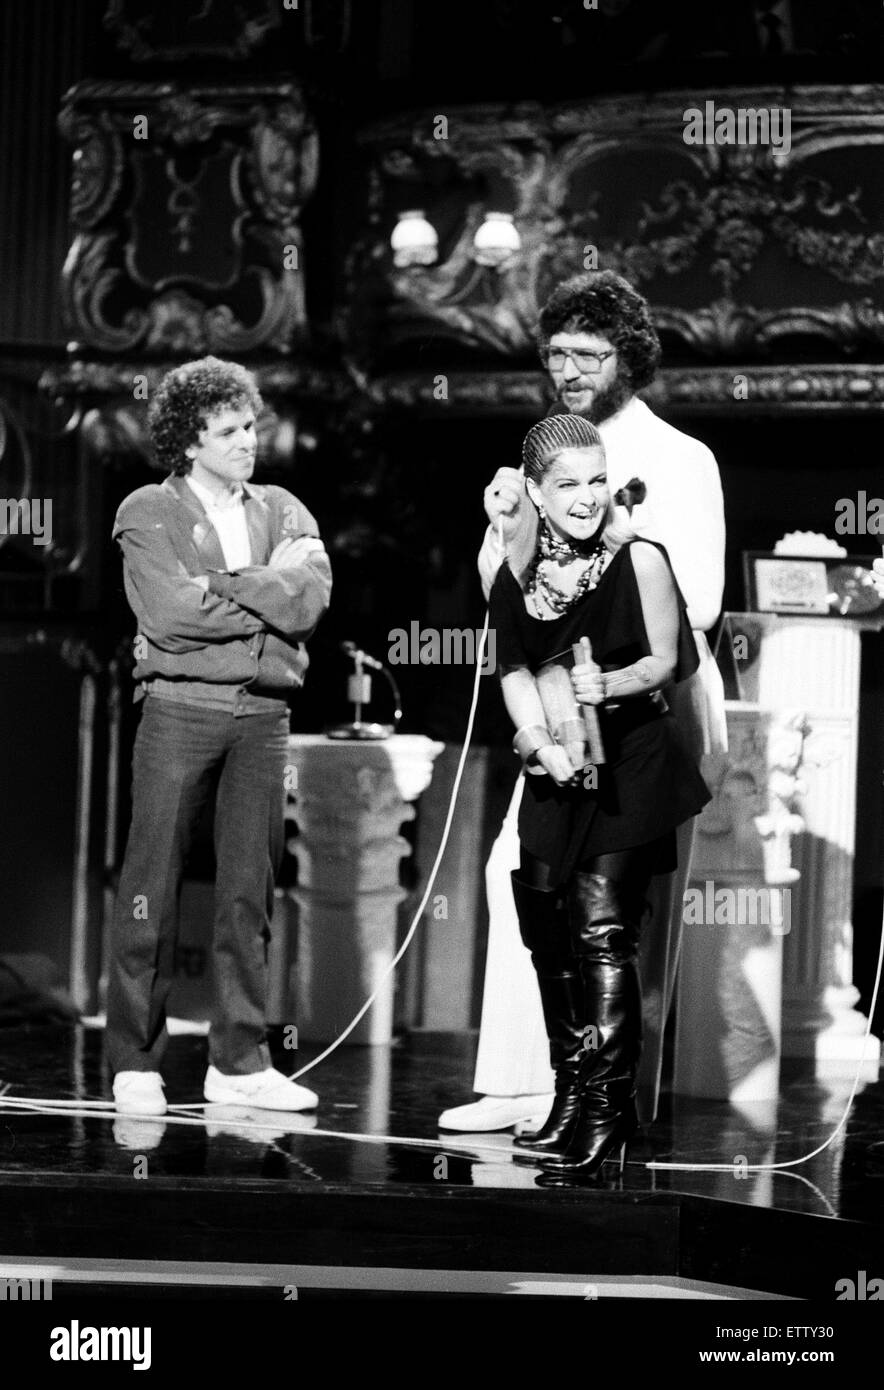 Tägliche Spiegel British Rock & Pop Awards am Lyceum, London. Toyah Willcox empfangende "Best Female Singer von 1981" Award. Auf der Bühne mit Leo Sayer und Dave Lee Travis abgebildet. 23. Februar 1982. Stockfoto